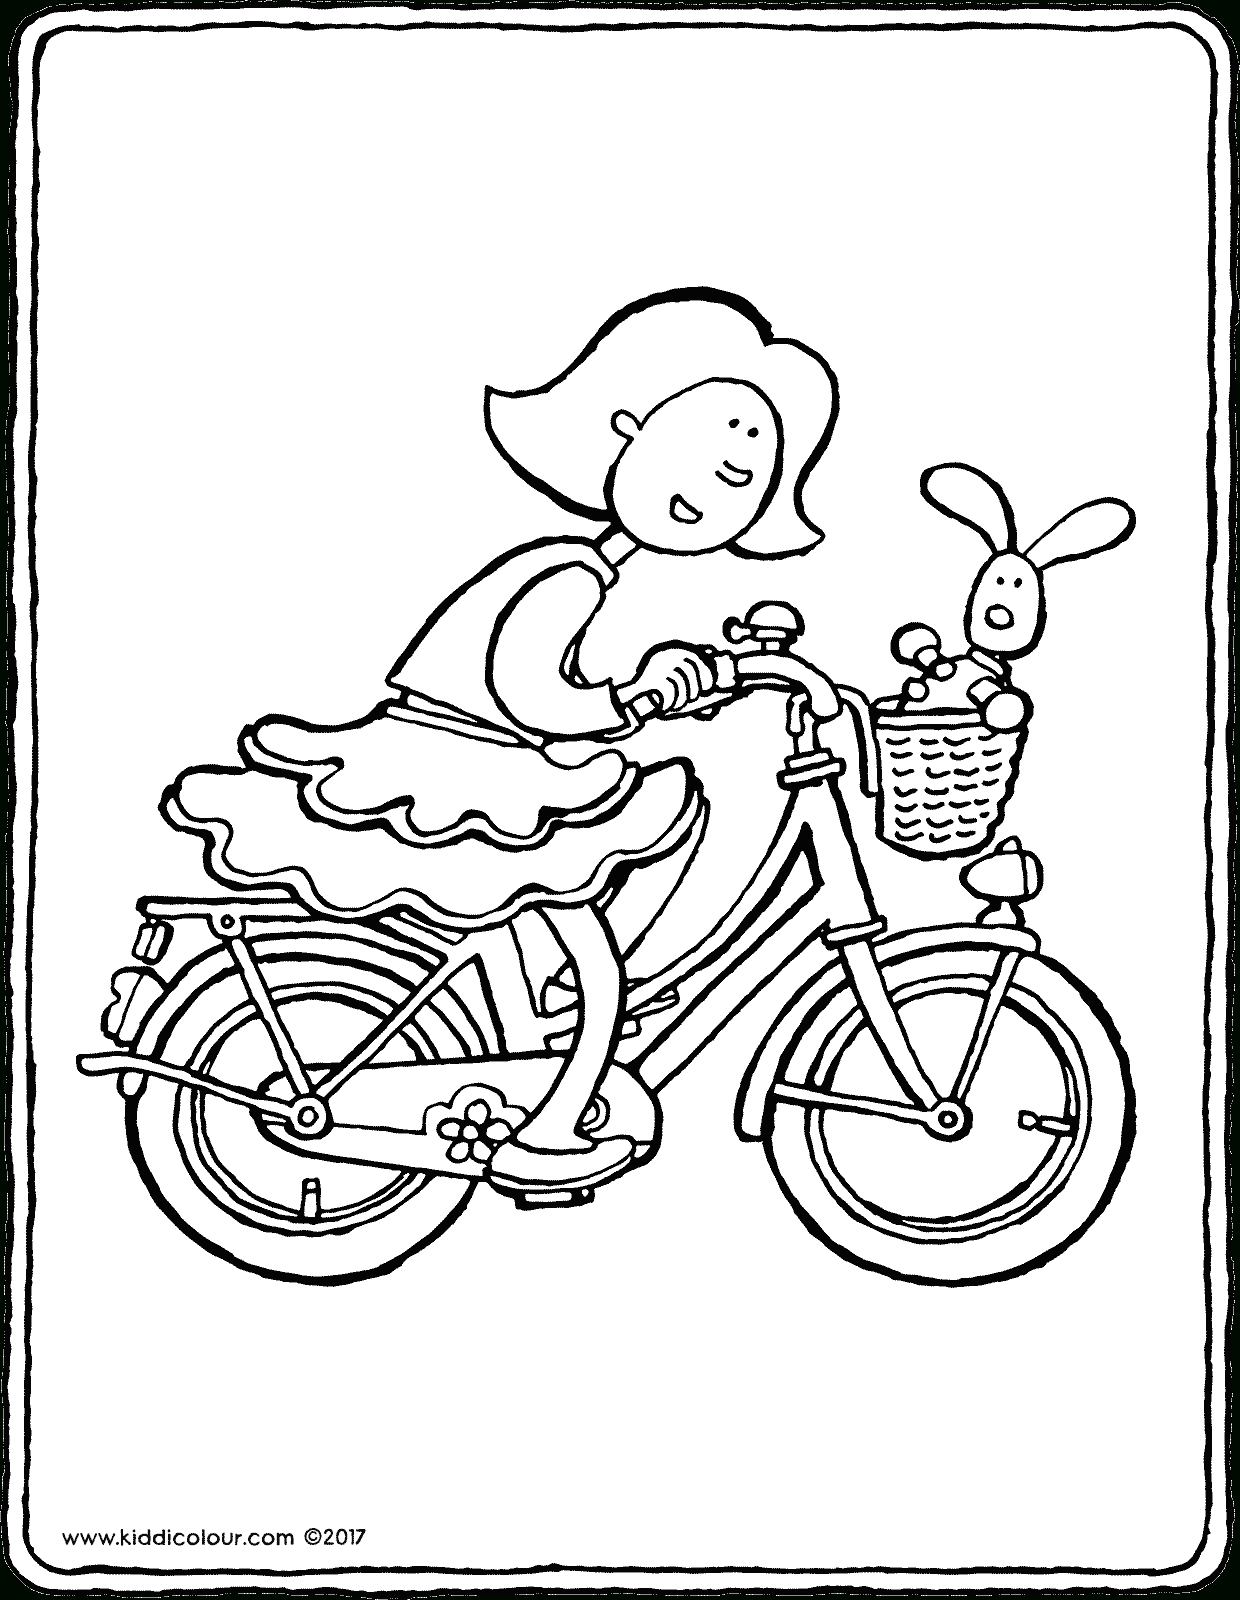 Emma Auf Dem Fahrrad - Kiddimalseite verwandt mit Bastelvorlage Fahrrad